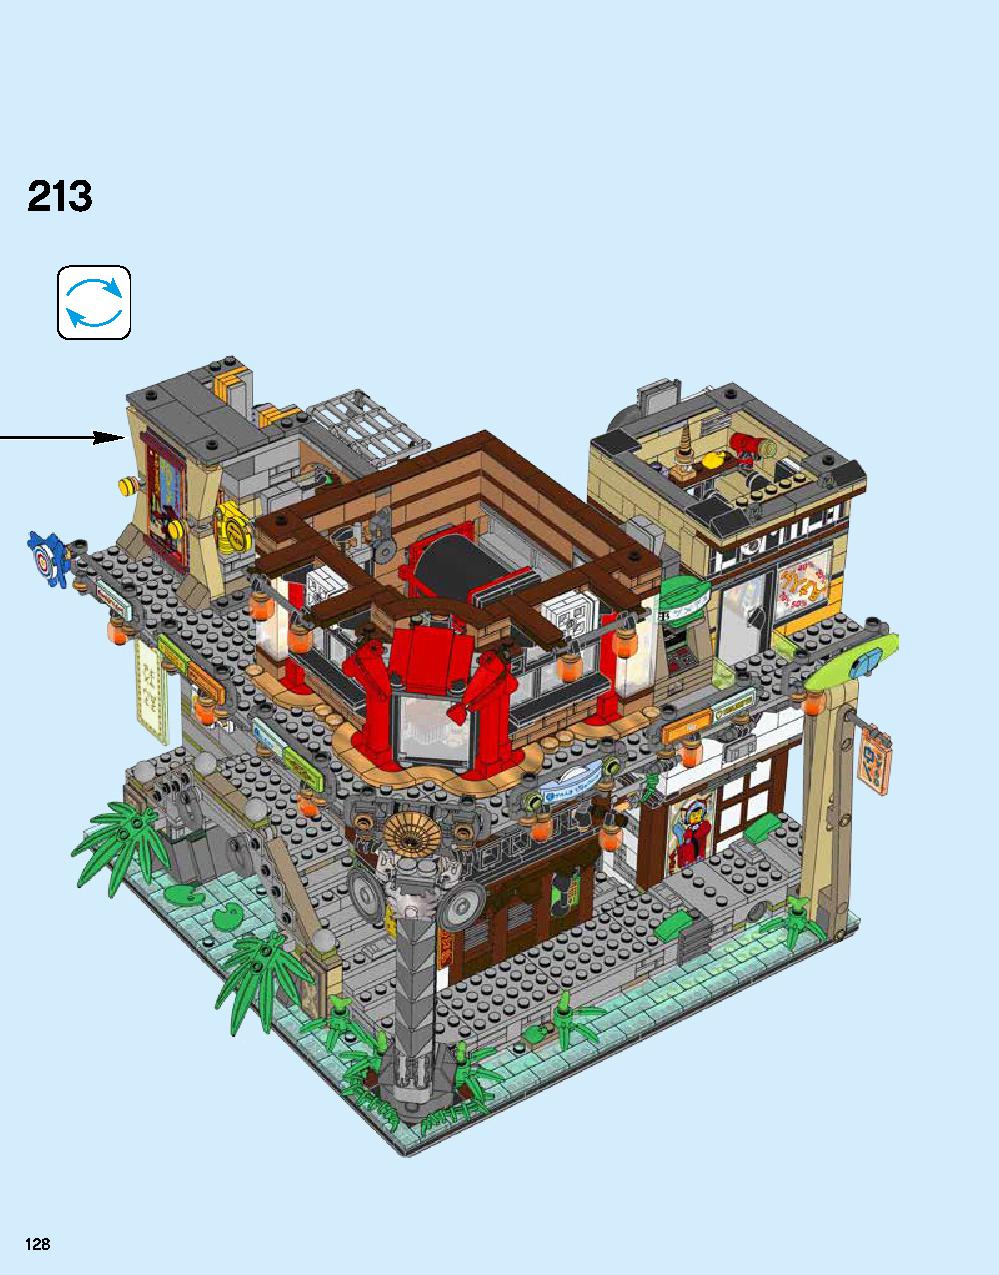 ニンジャゴー シティ 70620 レゴの商品情報 レゴの説明書・組立方法 128 page